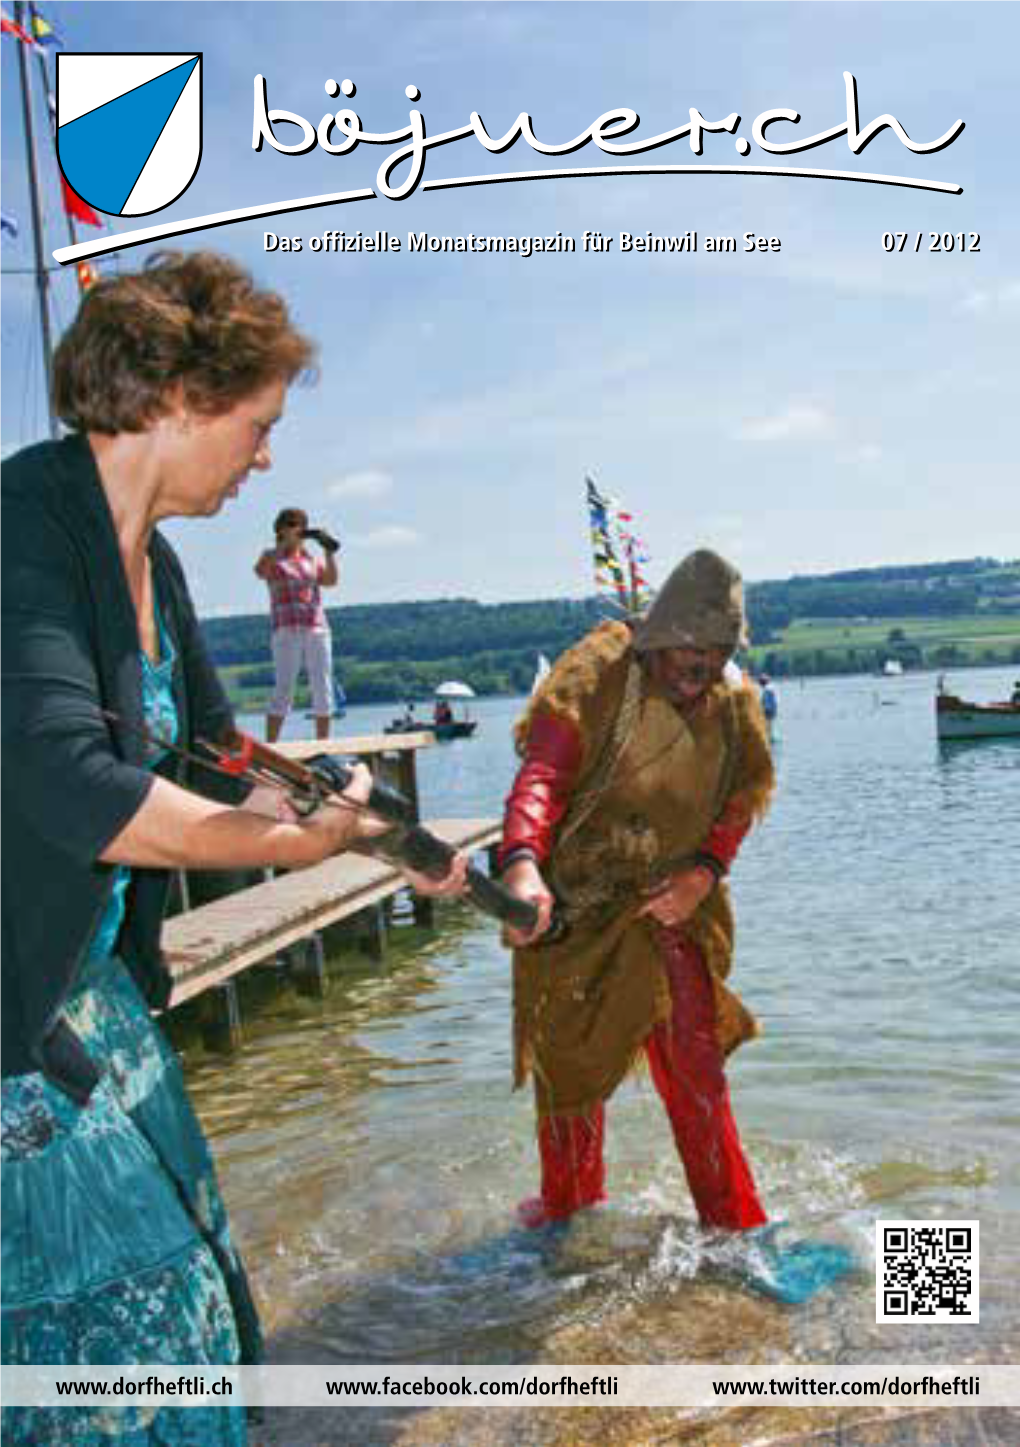 Das Offizielle Monatsmagazin Für Beinwil Am See 07 / 2012 Das